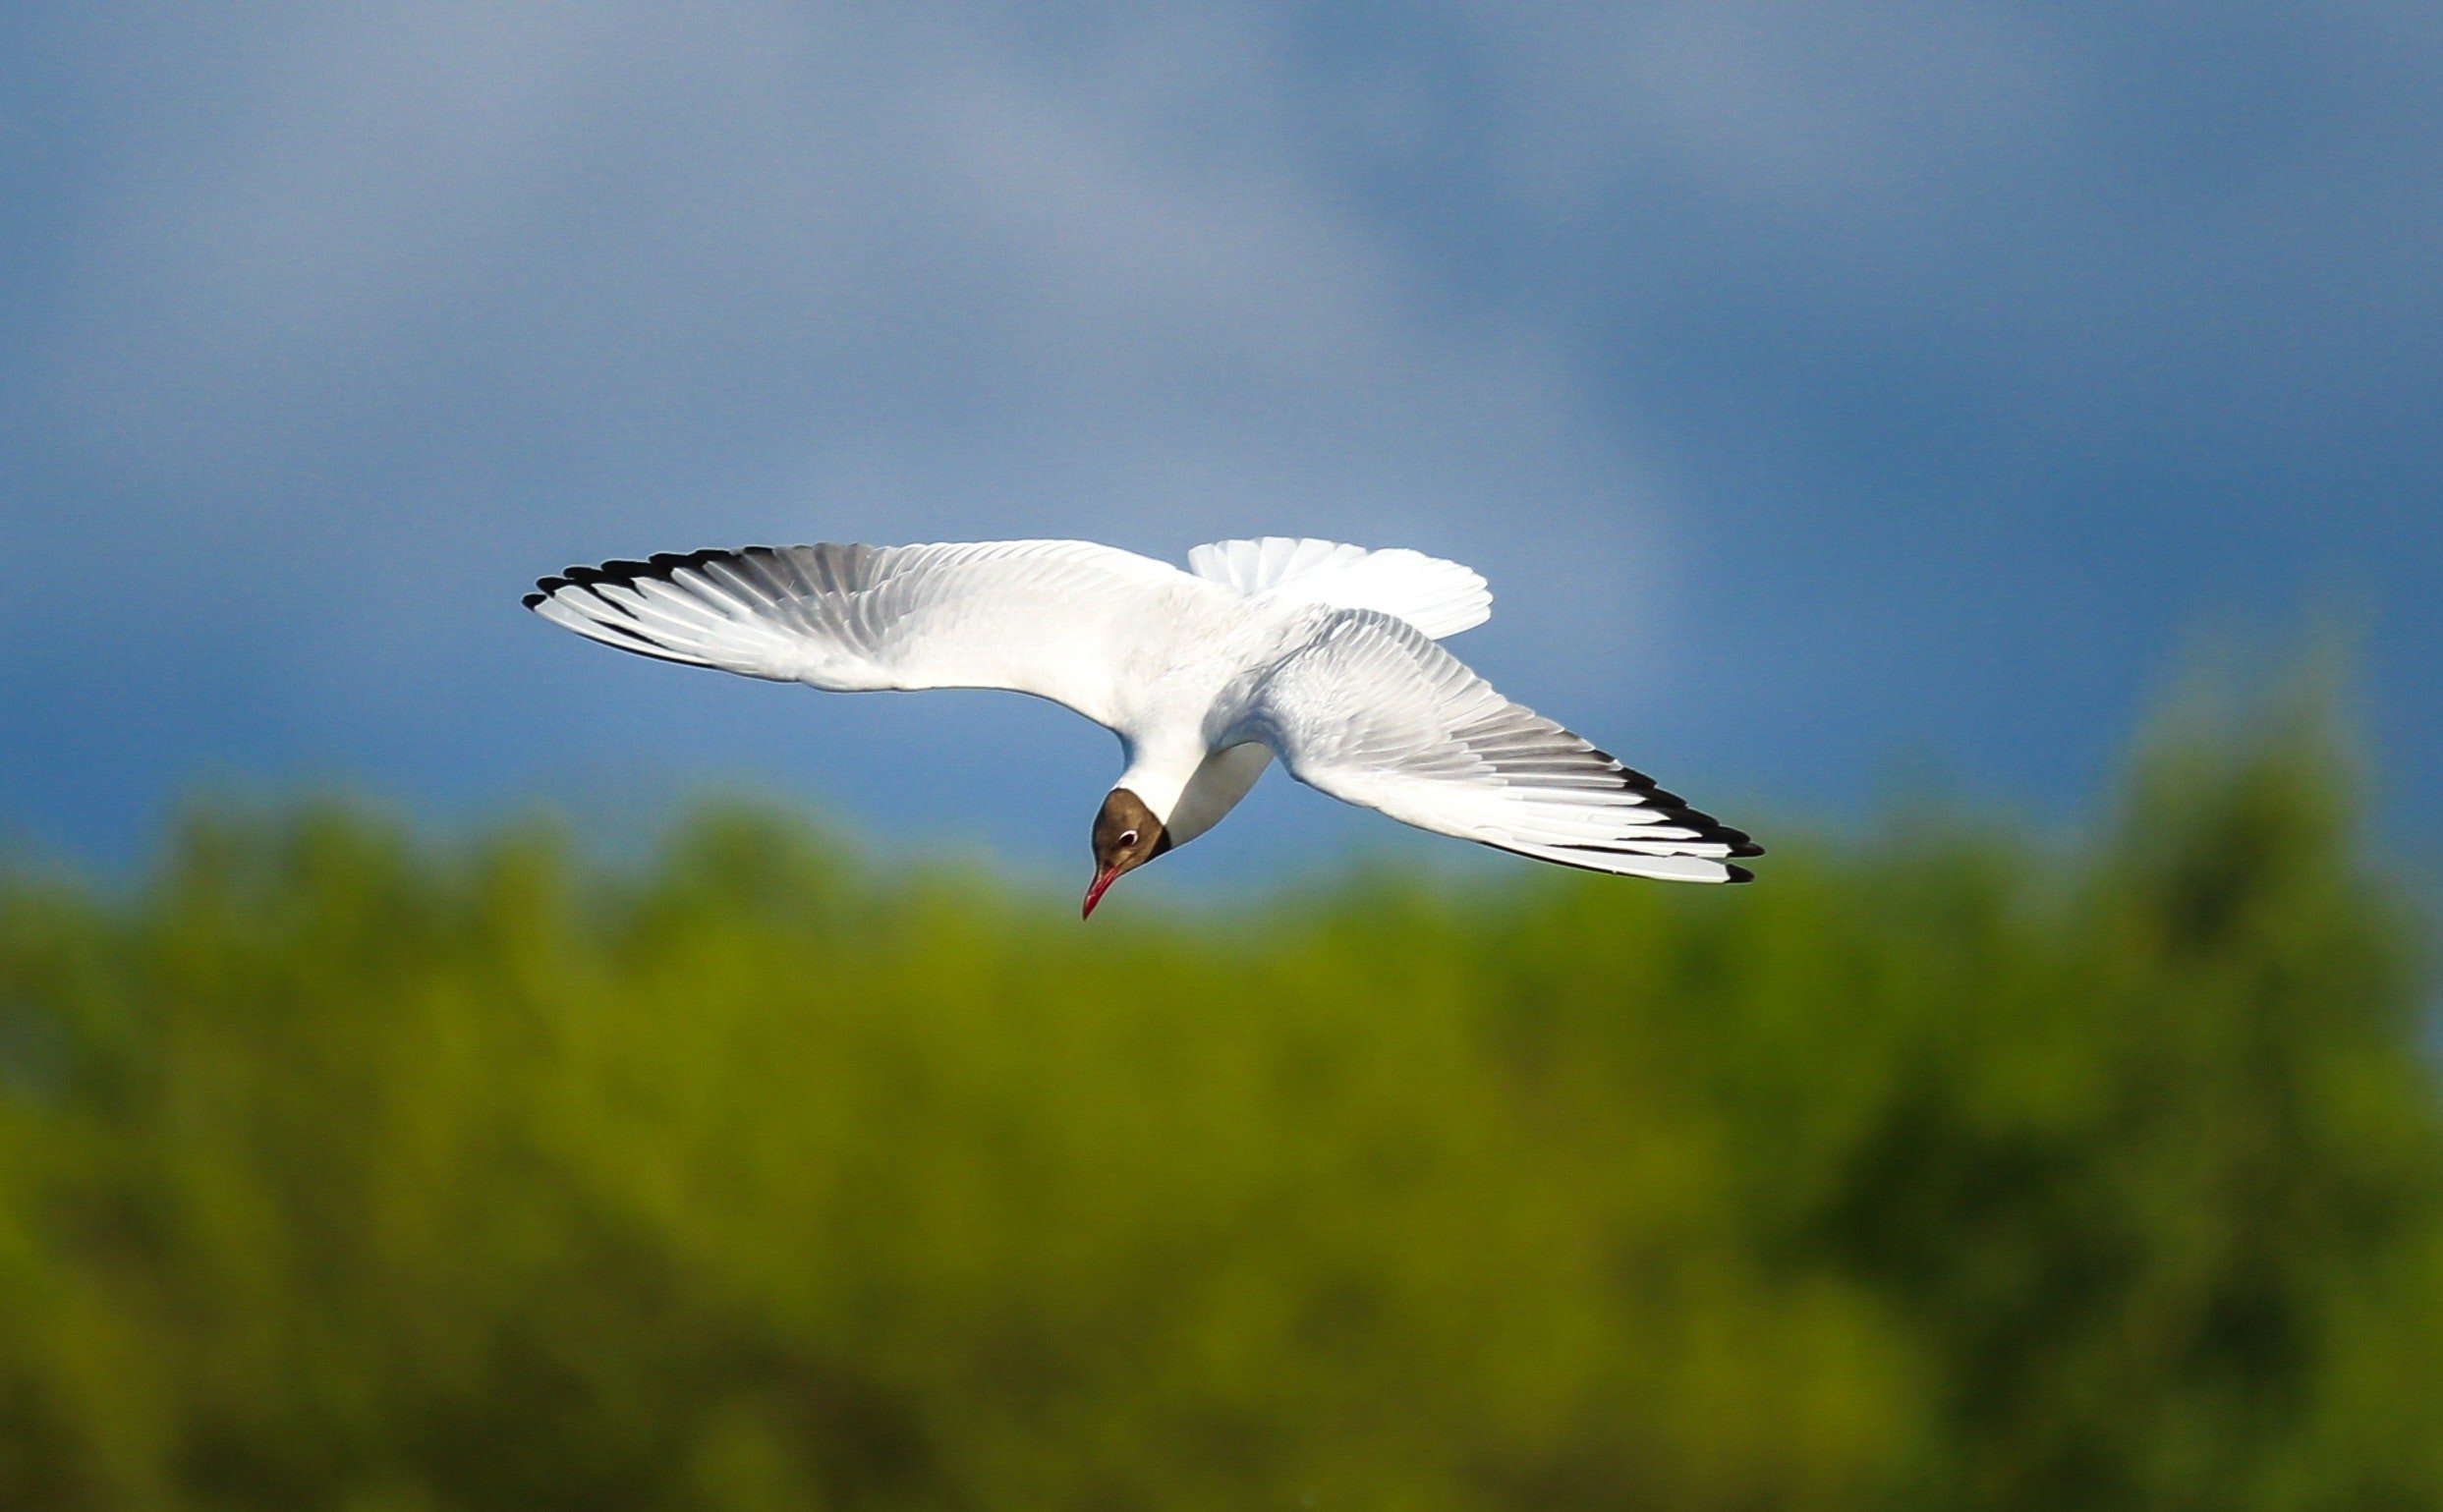 Pesquisadores acreditam que albatrozes podem ser eficazes na busca por embarcações ilegais. Os chips implantados nas penas das aves detectam os radares dos barcos mesmo quando desligados (Foto: Pexels)